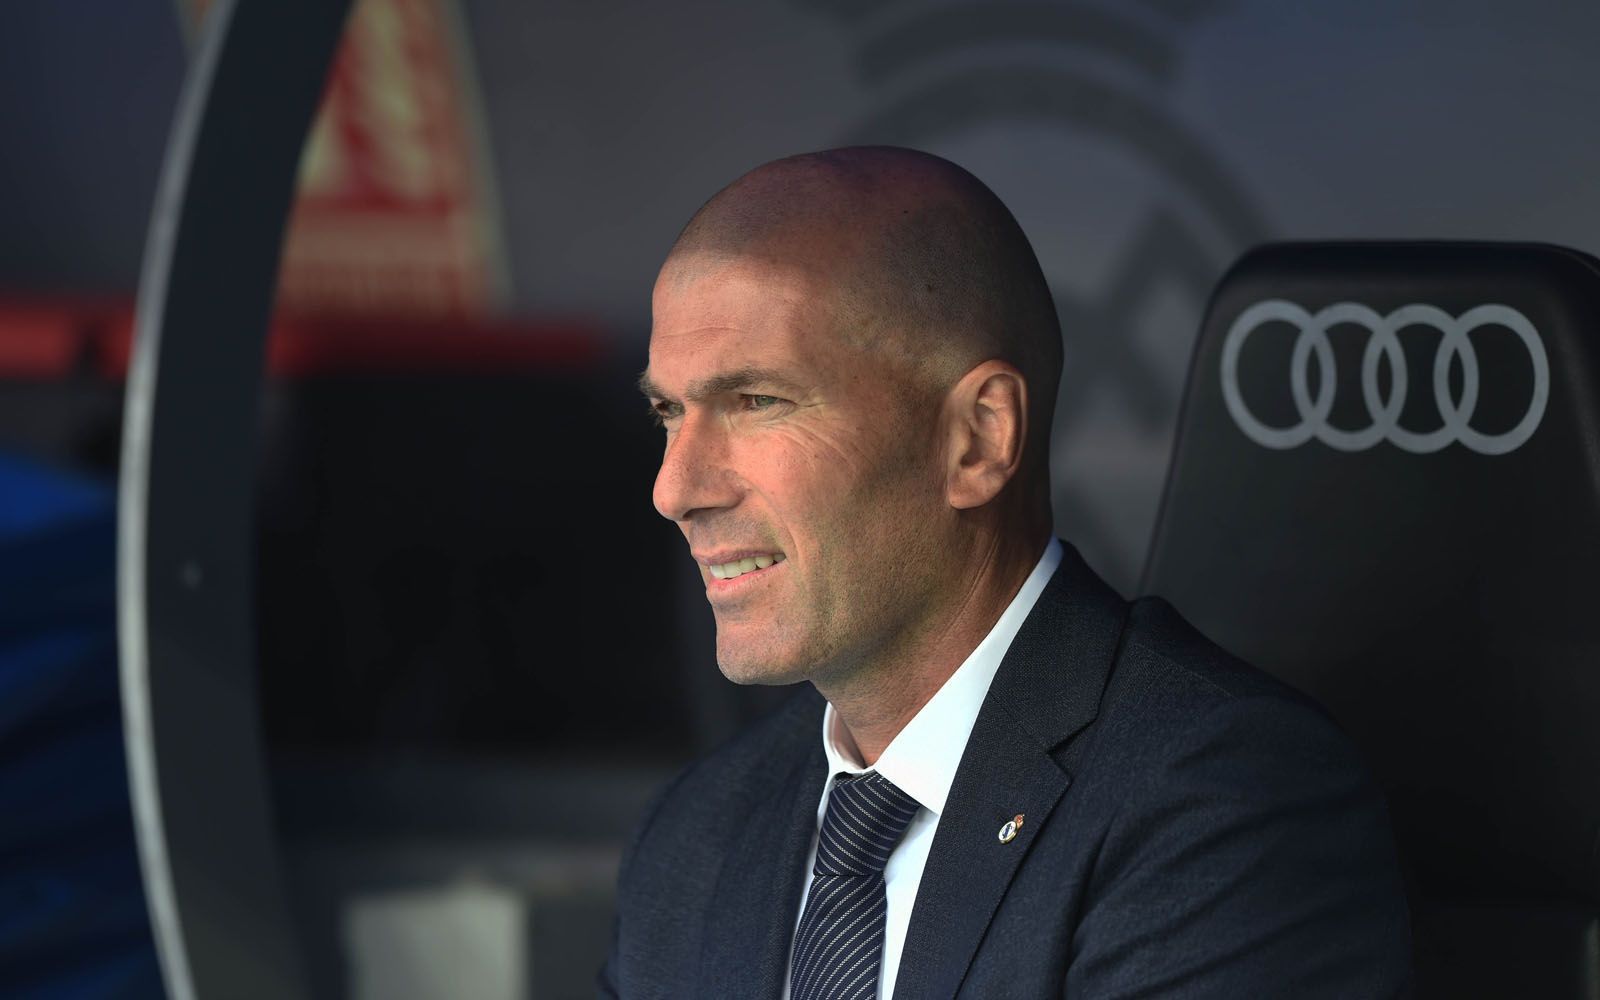 
                <strong>Trainer Zinedine Zidane</strong><br>
                Erfolgscoach Zinedine Zidane, unter dem Real das Champions League-Triple feiern konnte, kehrte im März knapp neun Monate nach seinem Rücktritt auf die Trainerbank zurück. Ab der kommenden Saison wird der so erfolgreiche Trainer aus der Vergangenheit wieder an seinem Schaffen gemessen werden. Sein neues Arbeitspapier läuft bis 2022.
              